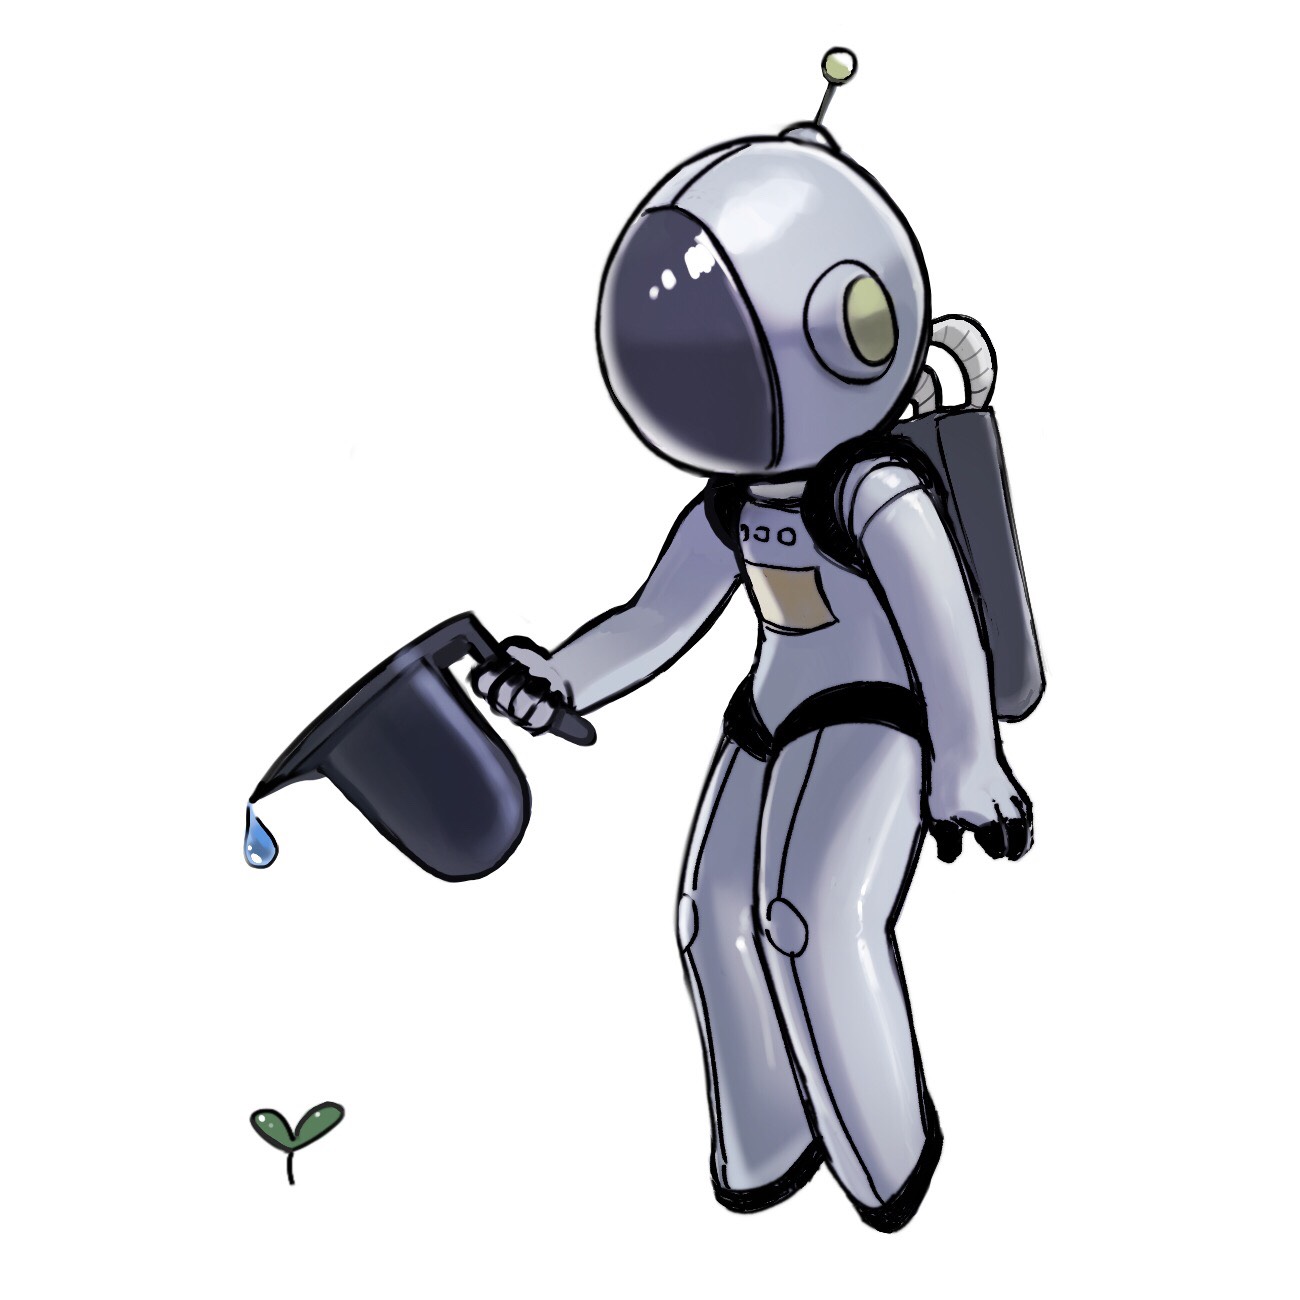 SpaceFarmerBot